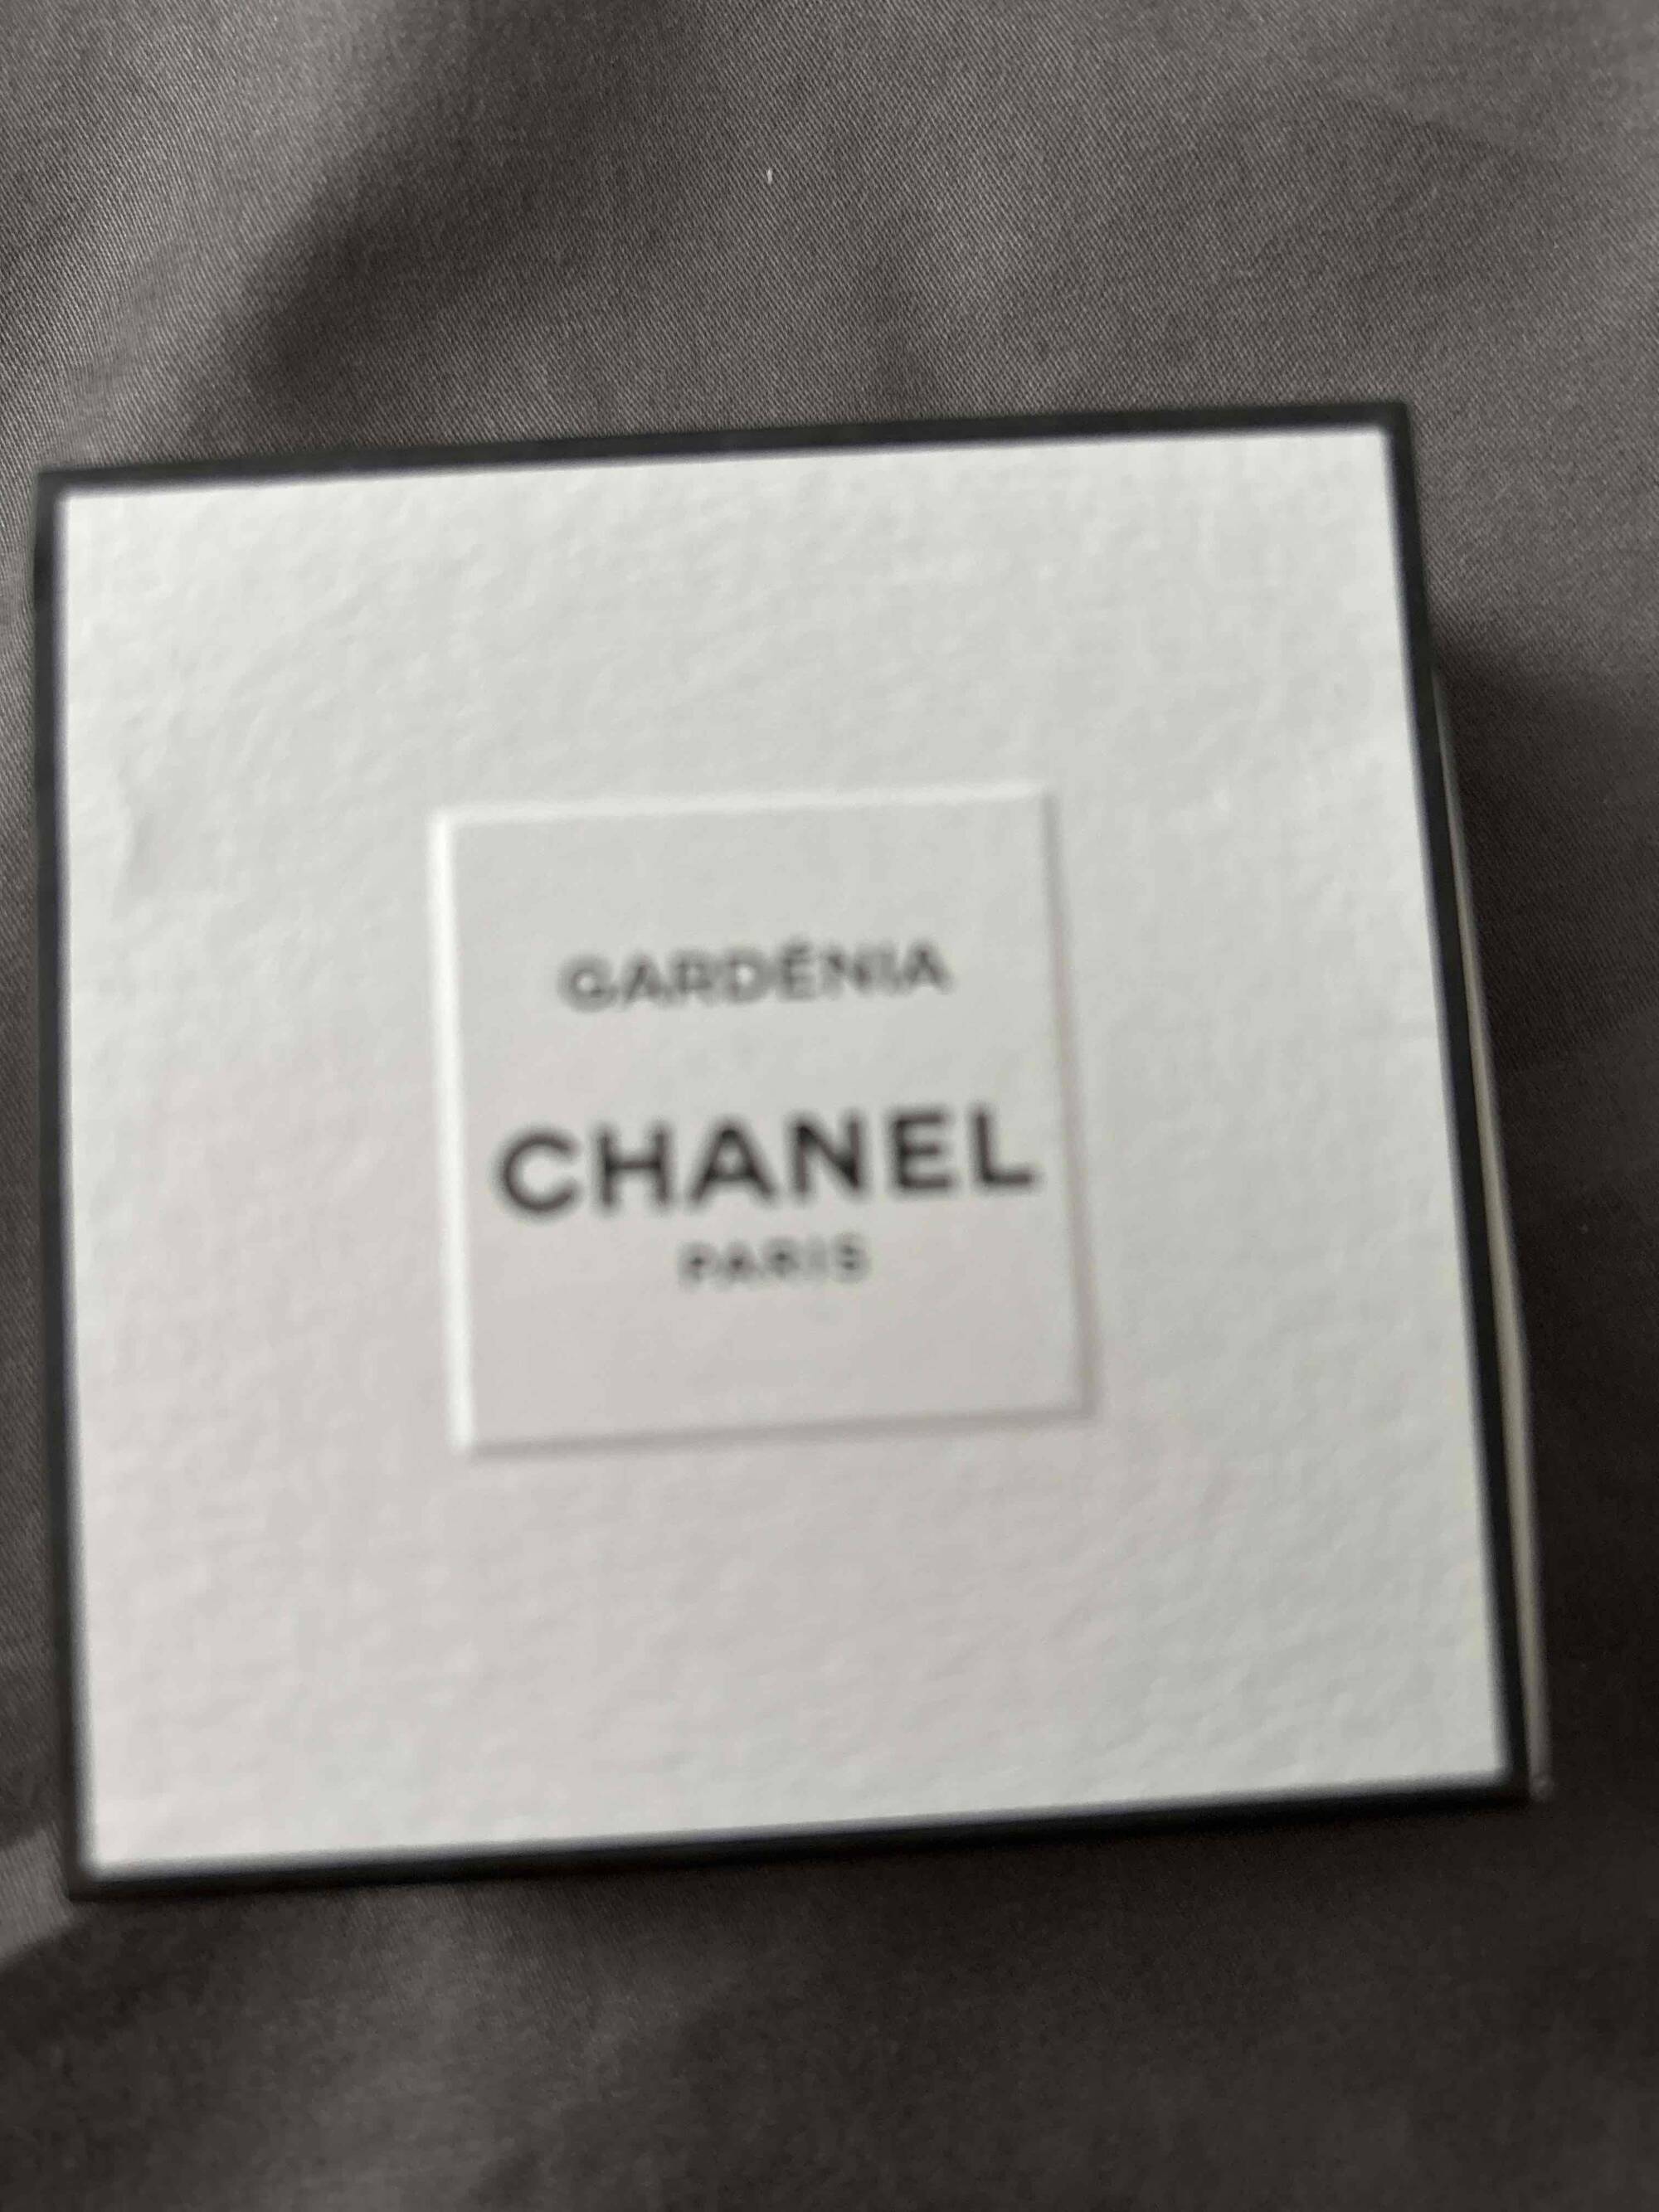 CHANEL - Gardénia - Eau de Parfum 